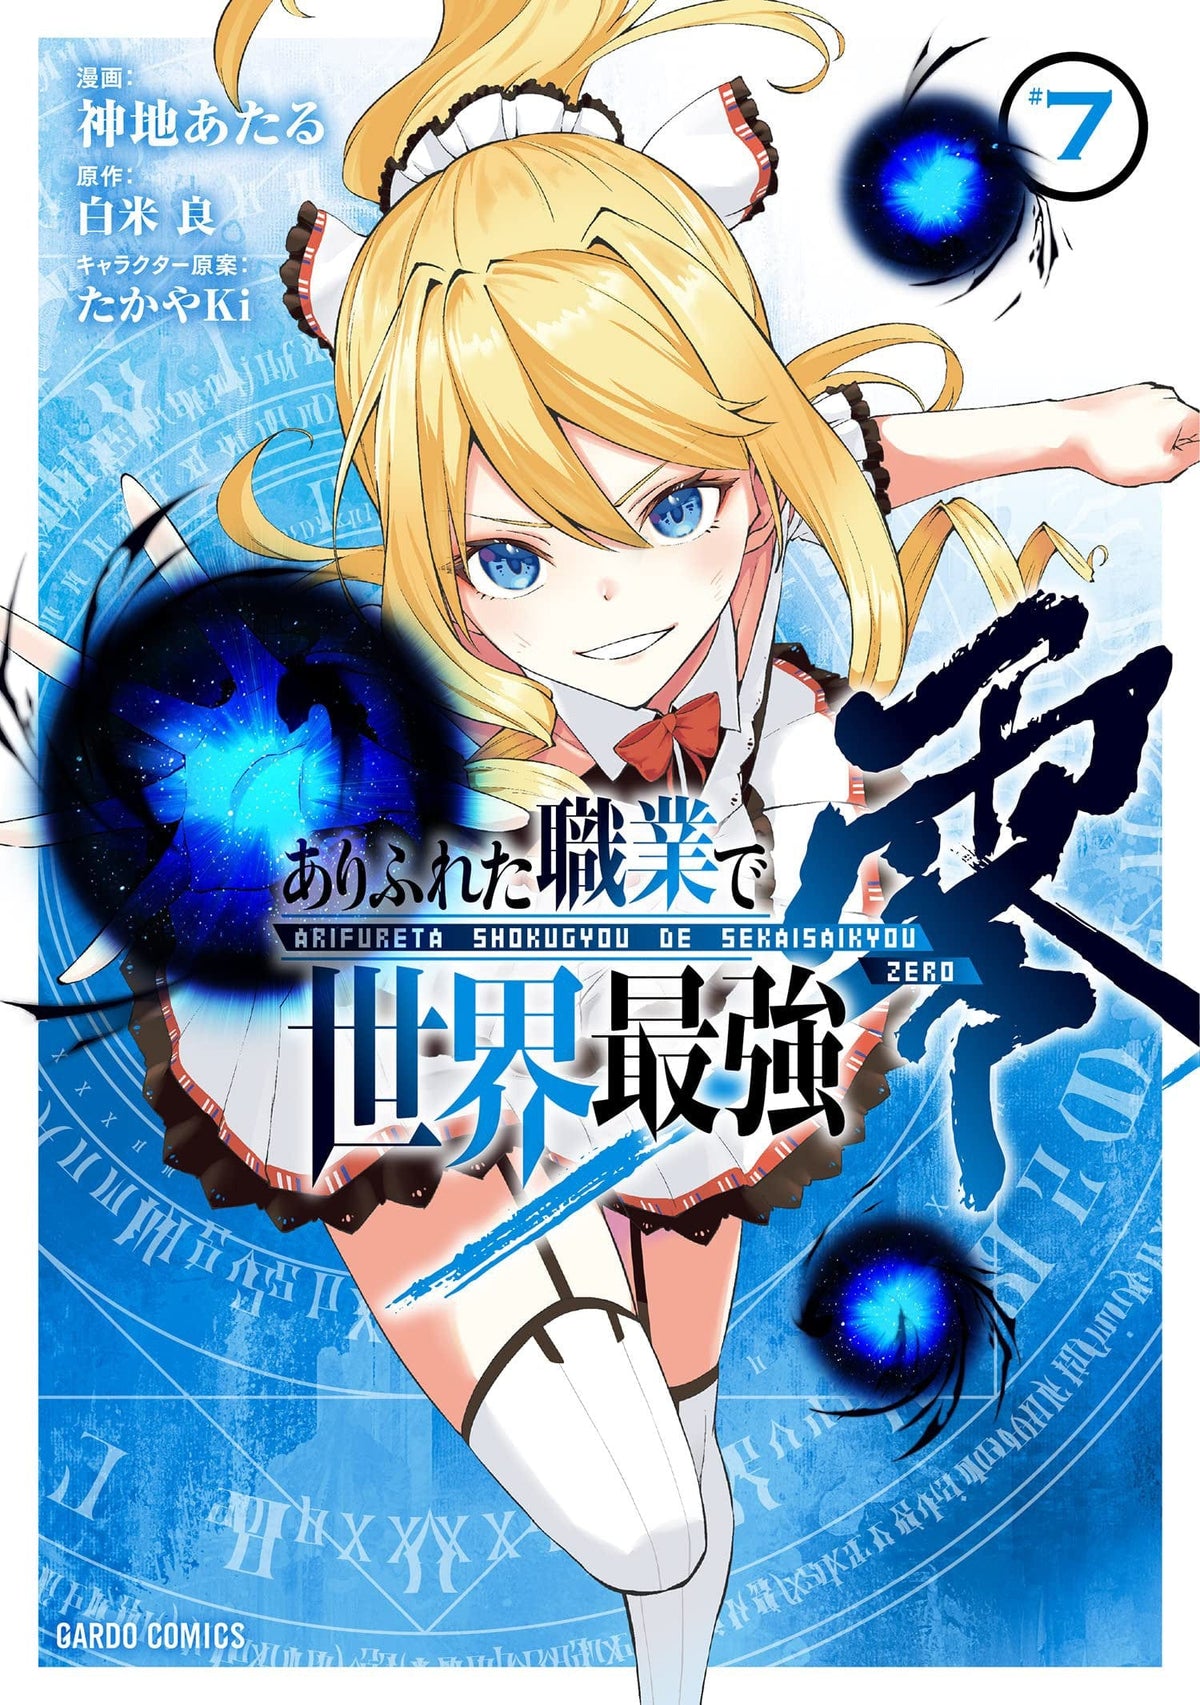 Arifureta: From Commonplace To World's Strongest Zero (Manga) Vol. 7 - Third Eye